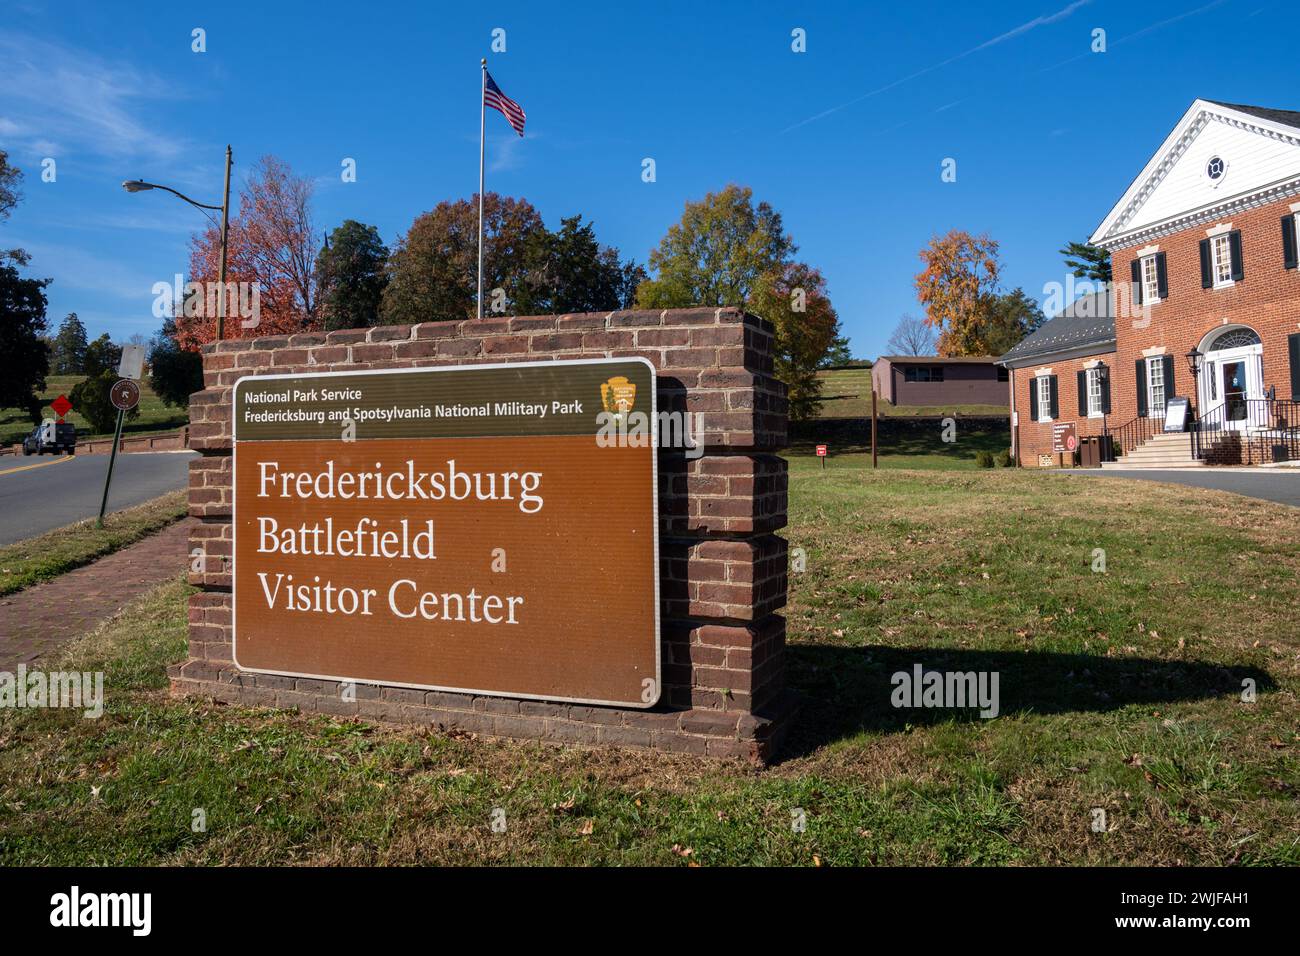 Fredericksburg, Virginia - November 4, 2023: Sign for the Battle of Fredericksburg Visitor Center - Spotsylvania Military Park - American Civil War Stock Photo